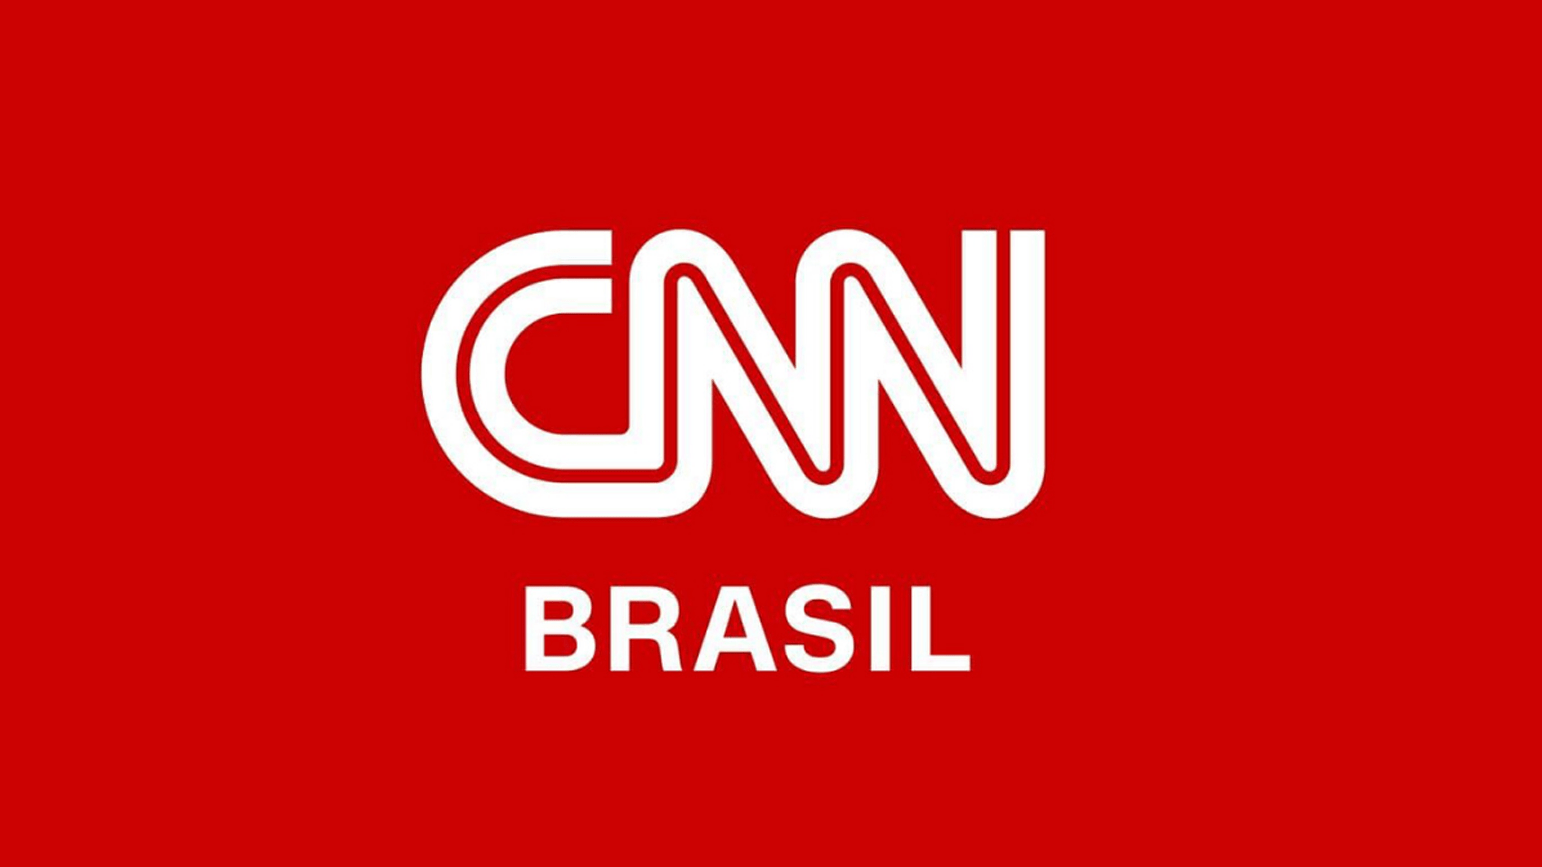 <a href="https://www.cnnbrasil.com.br/economia/vendas-no-e-commerce-atingem-r-80-bilhoes-no-primeiro-semestre-diz-associacao/" target="_blank" style="color: inherit;">CNN Brasil</a>